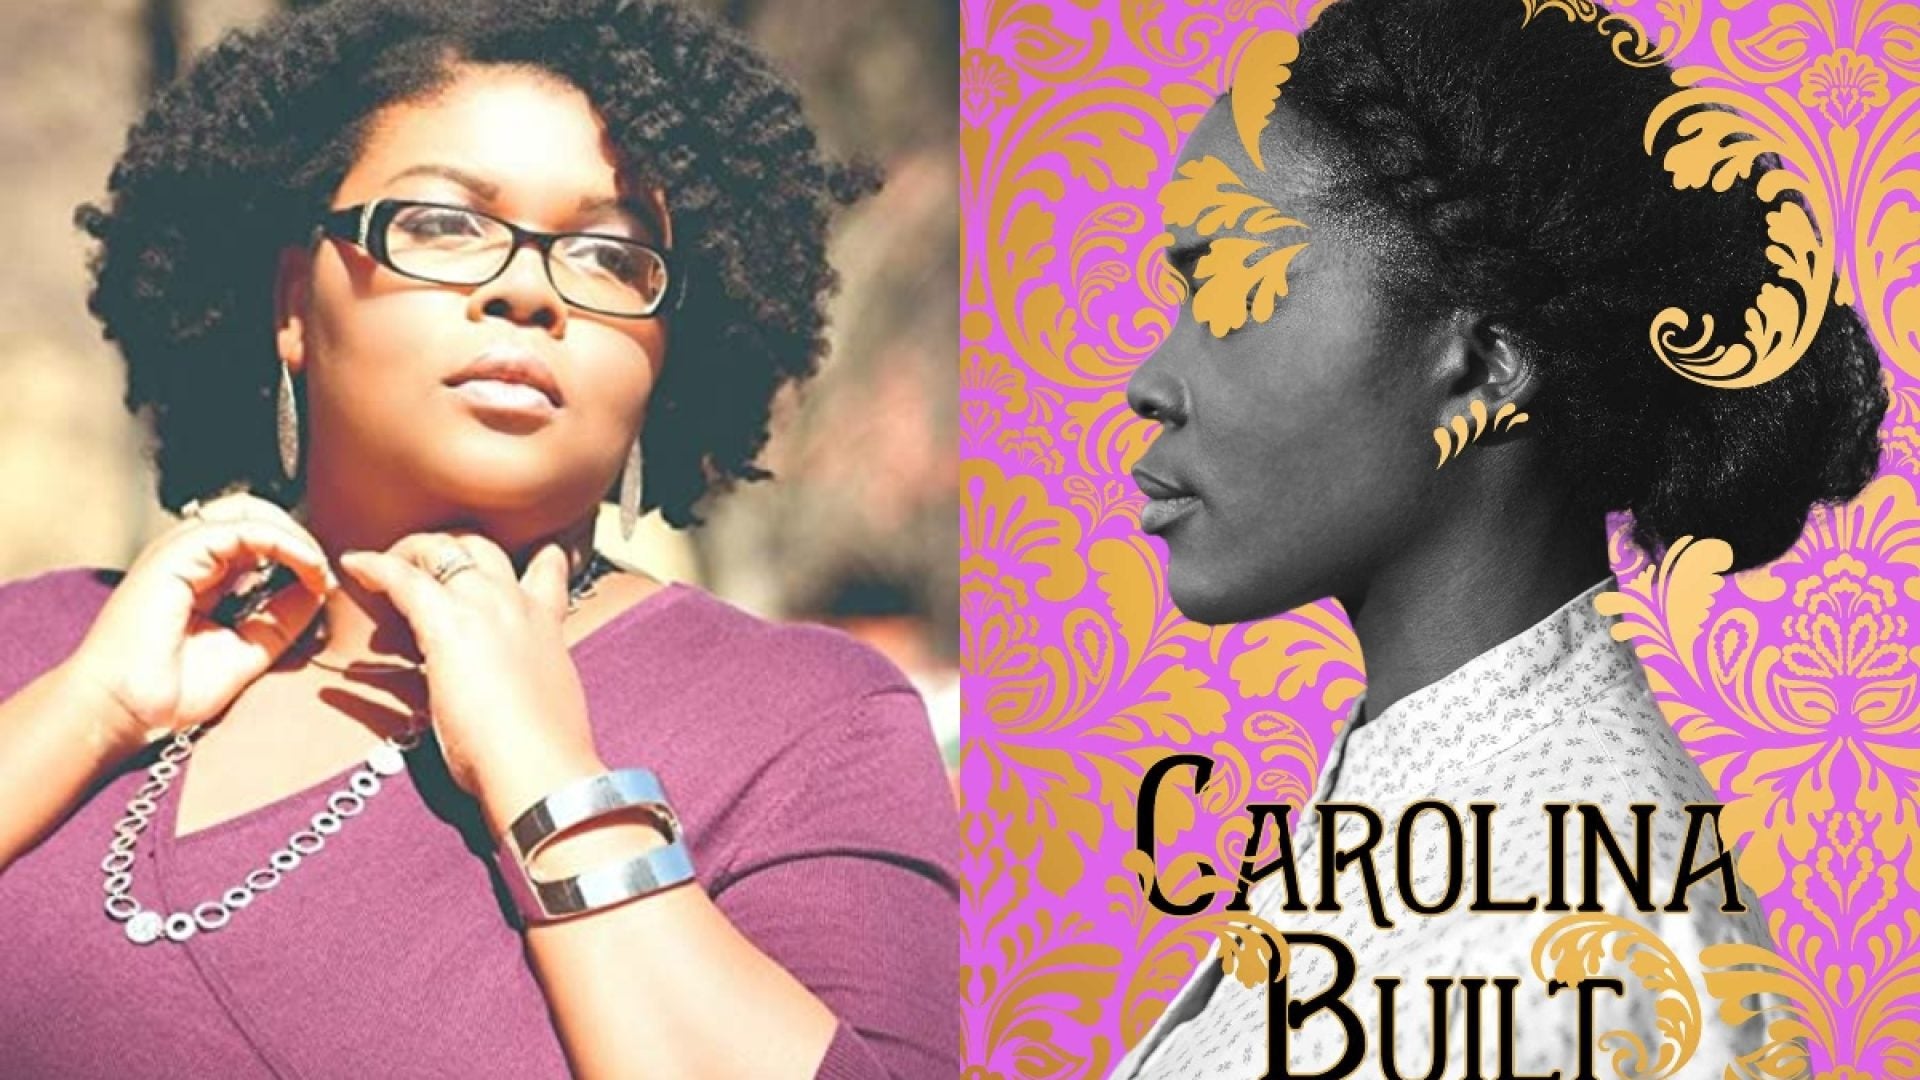 For The 'Bridgerton' Fans: 6 Black Authors Who Write Historical Fiction Romance